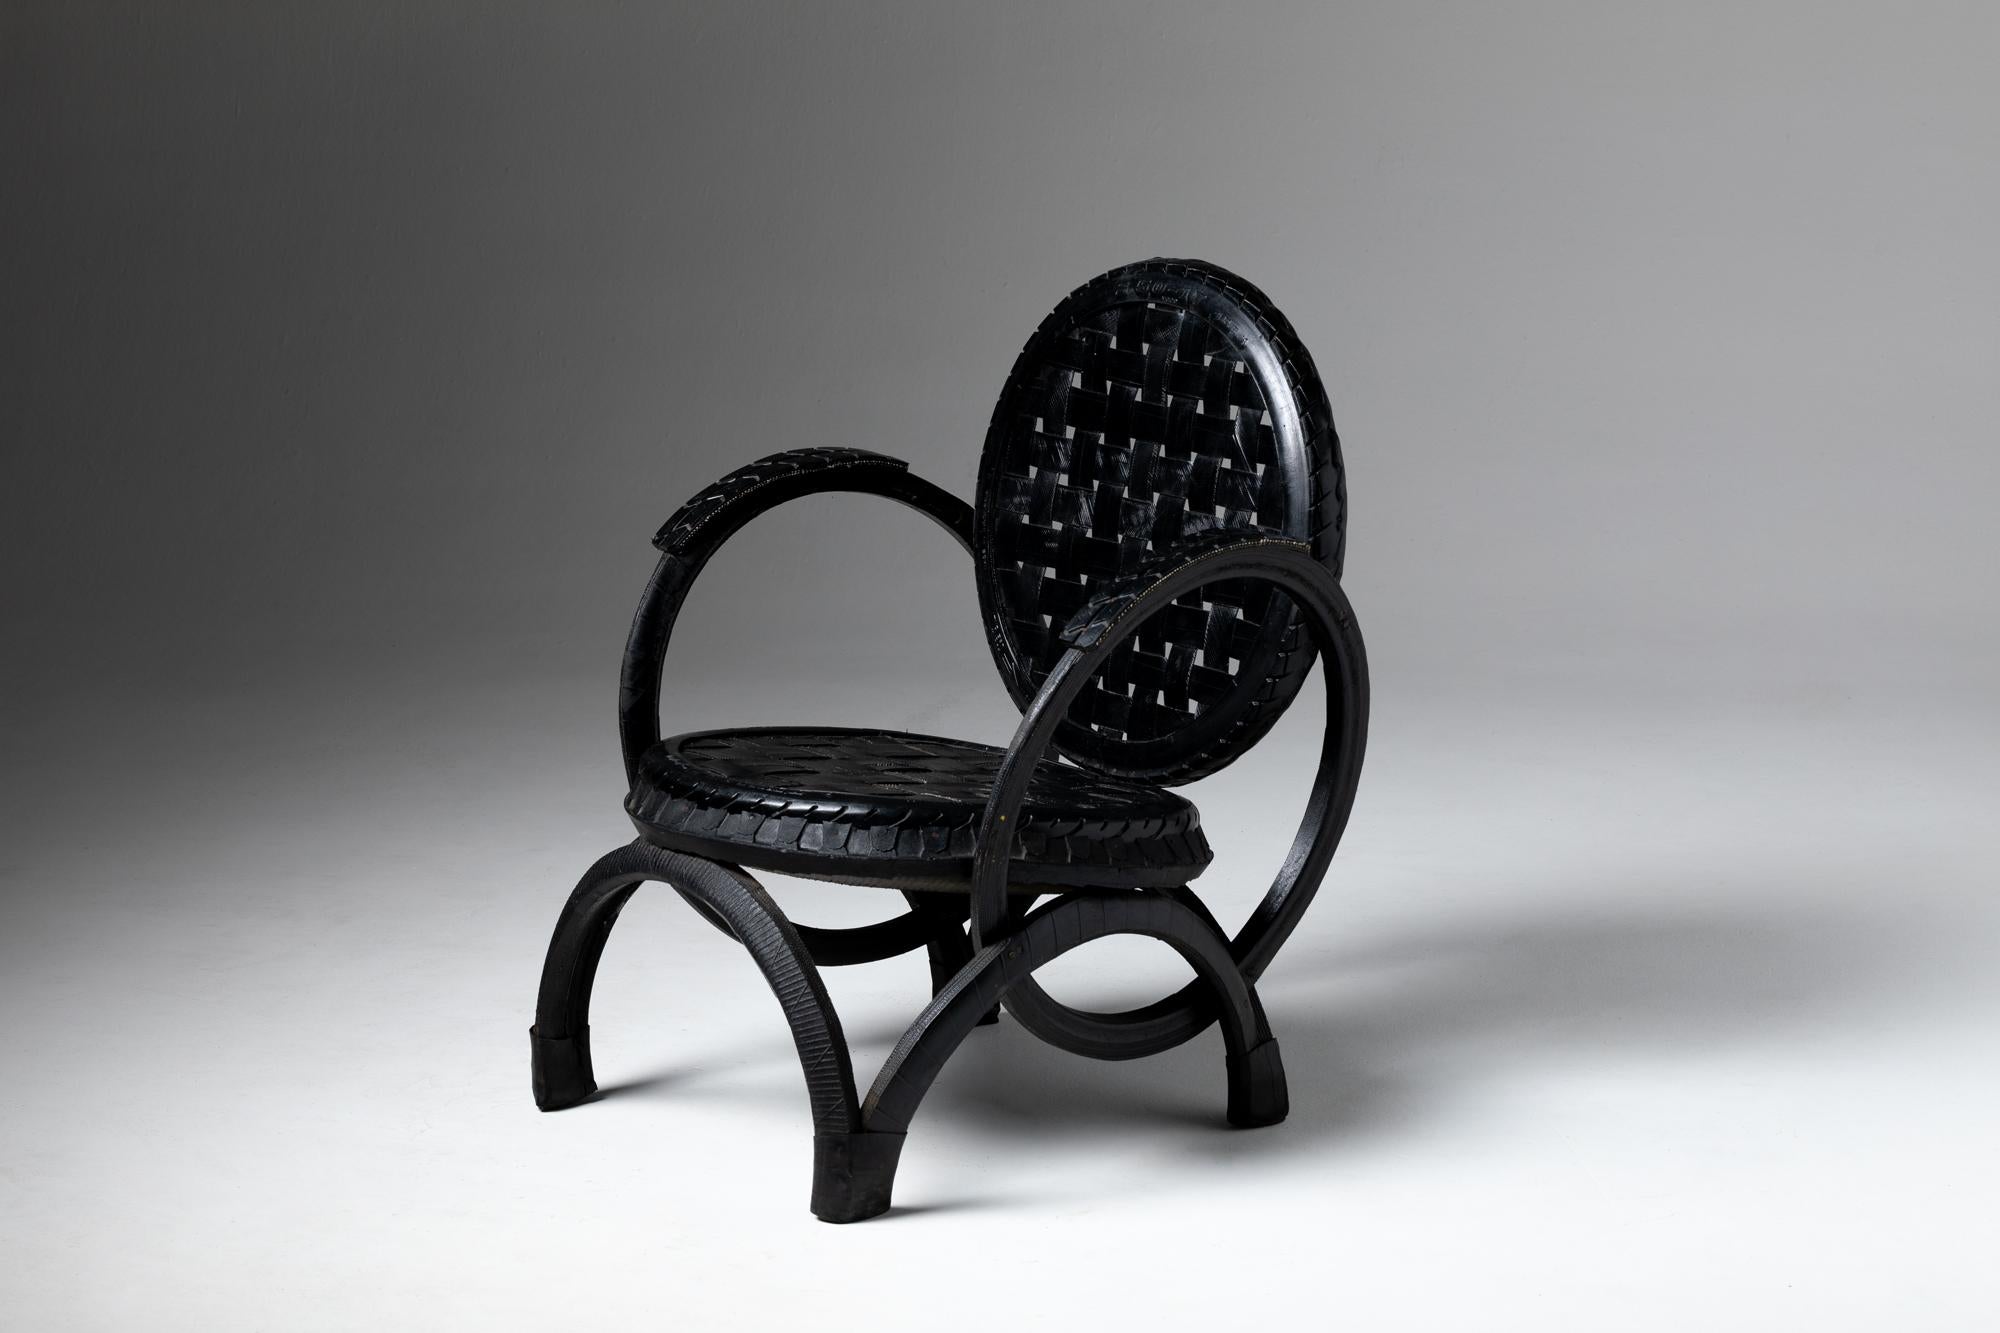 Cette pièce spéciale illustre la possibilité de fabriquer une chaise assise avec un matériau complémentaire - l'utilisation de caoutchouc vulcanisé utilisé pour les pneus de route.

Le souci de durabilité est dû à l'impact du recyclage dur à